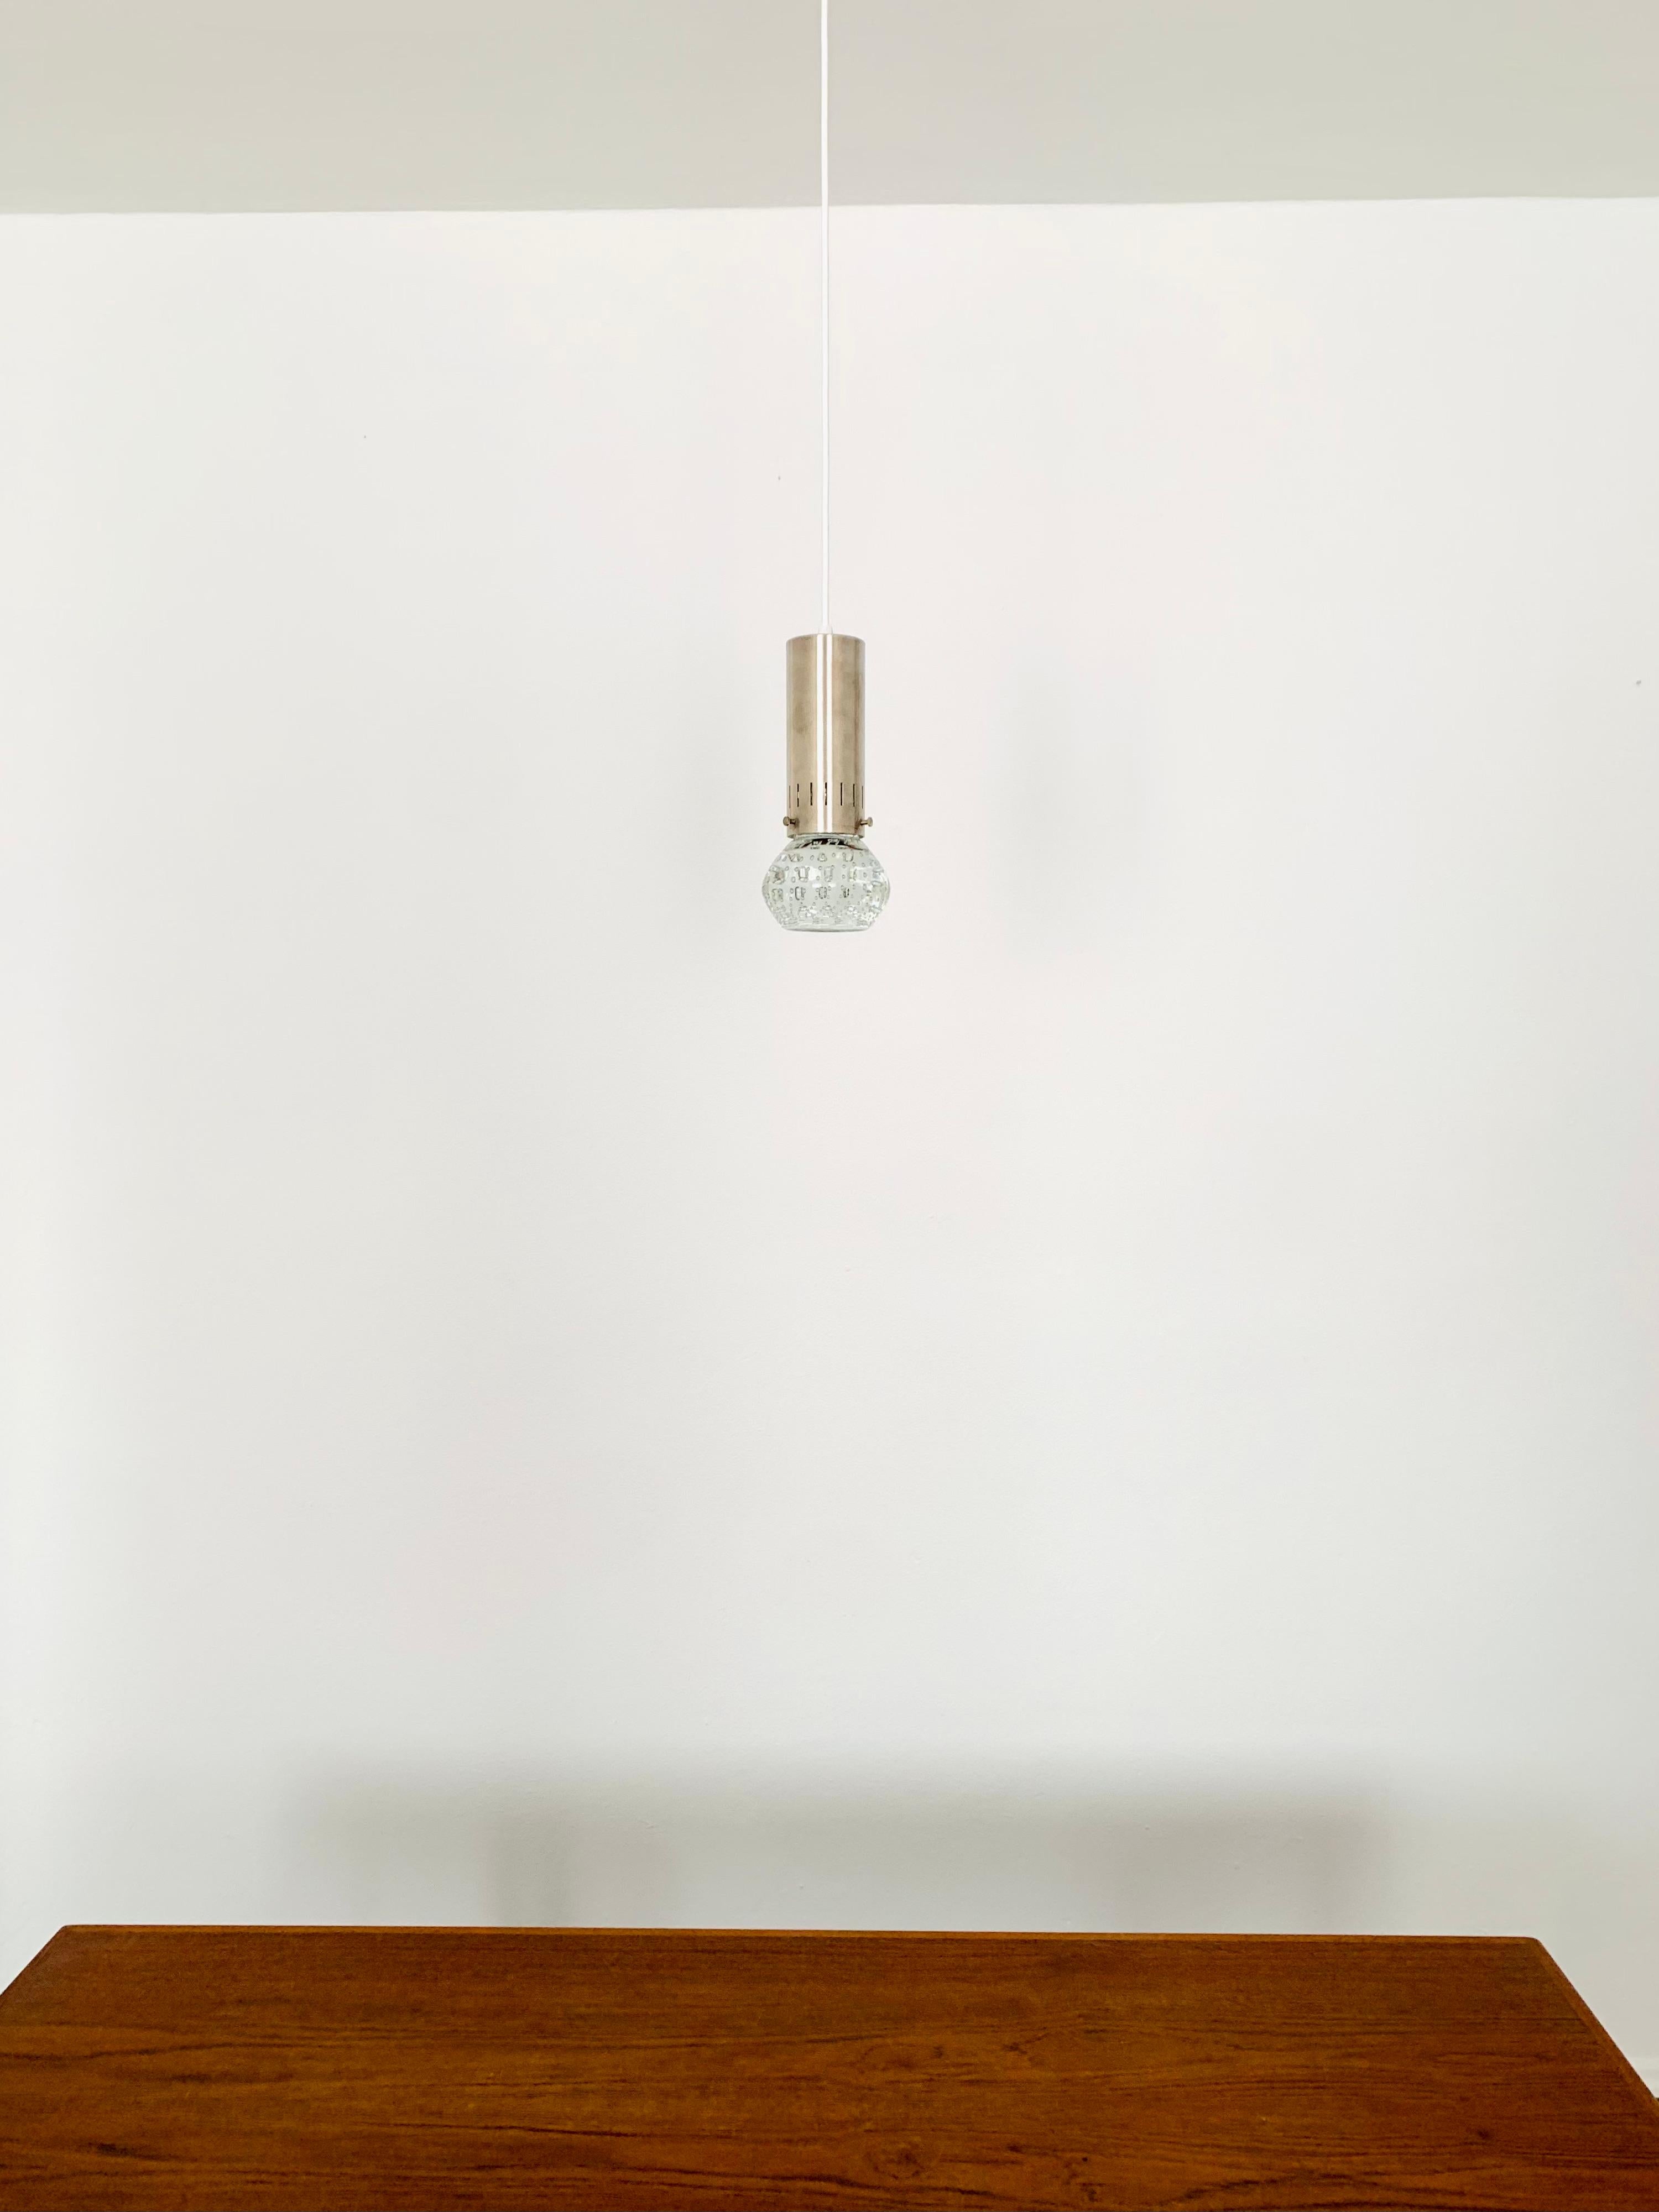 Set of 2 Seguso Glass Pendant Lamps by Gino Sarfatti for Arte In Good Condition For Sale In München, DE